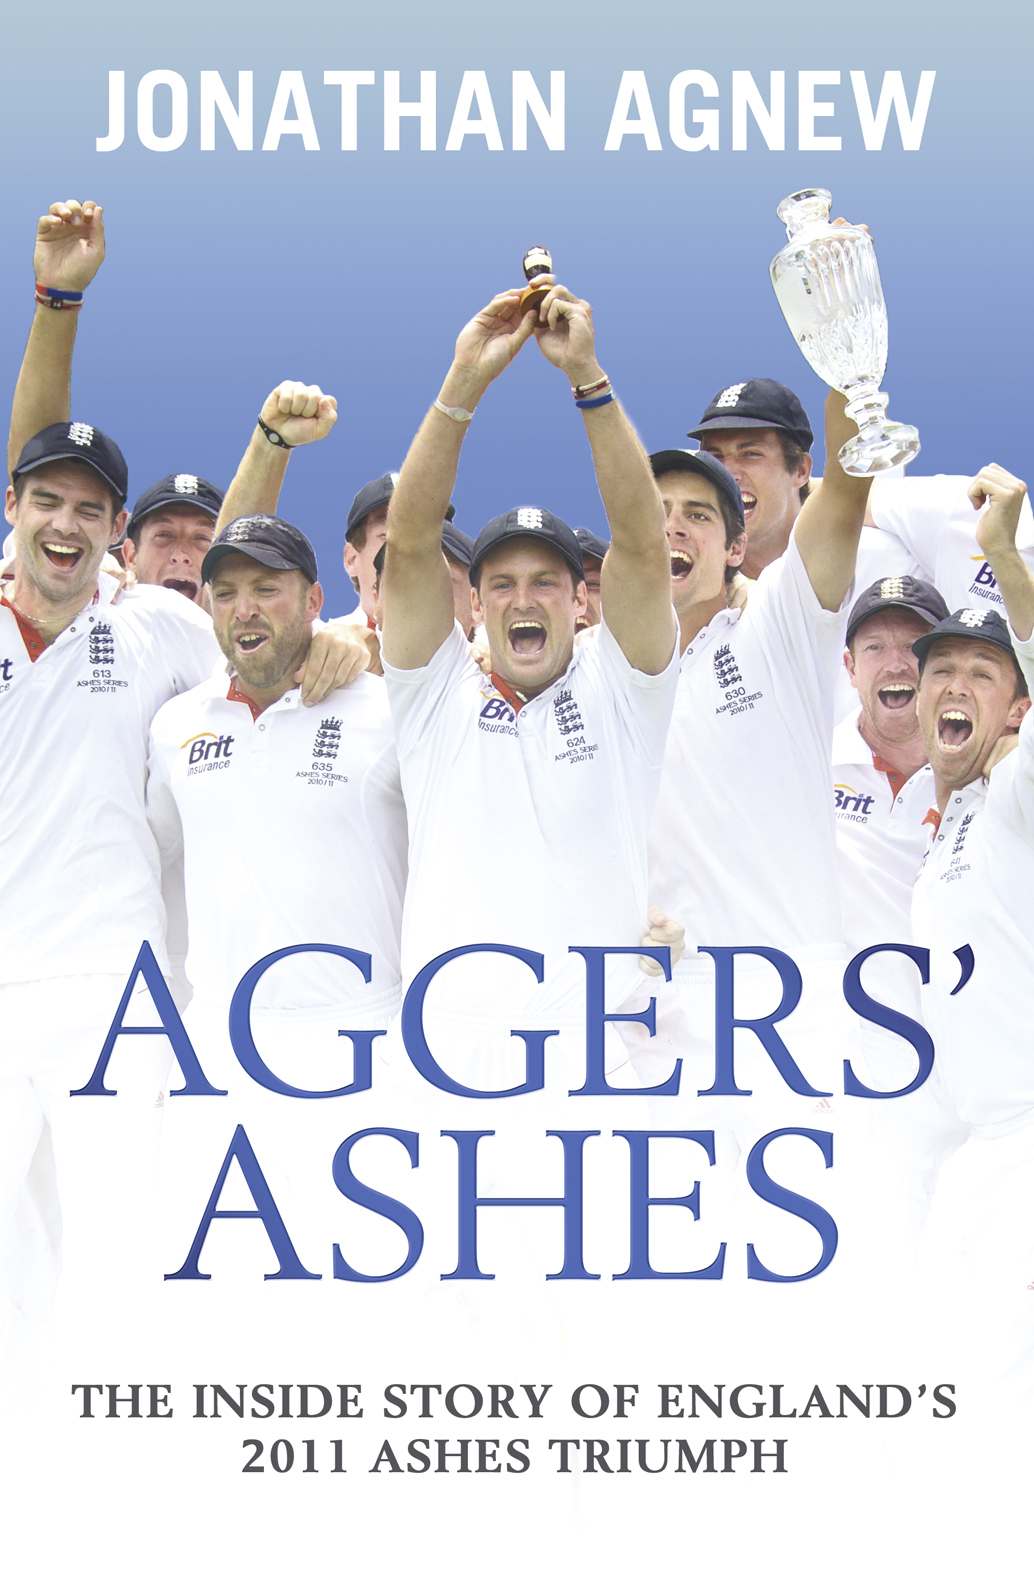 Книга Aggers’ Ashes из серии , созданная Jonathan Agnew, может относится к жанру Спорт, фитнес, Хобби, Ремесла. Стоимость электронной книги Aggers’ Ashes с идентификатором 39777821 составляет 234.55 руб.